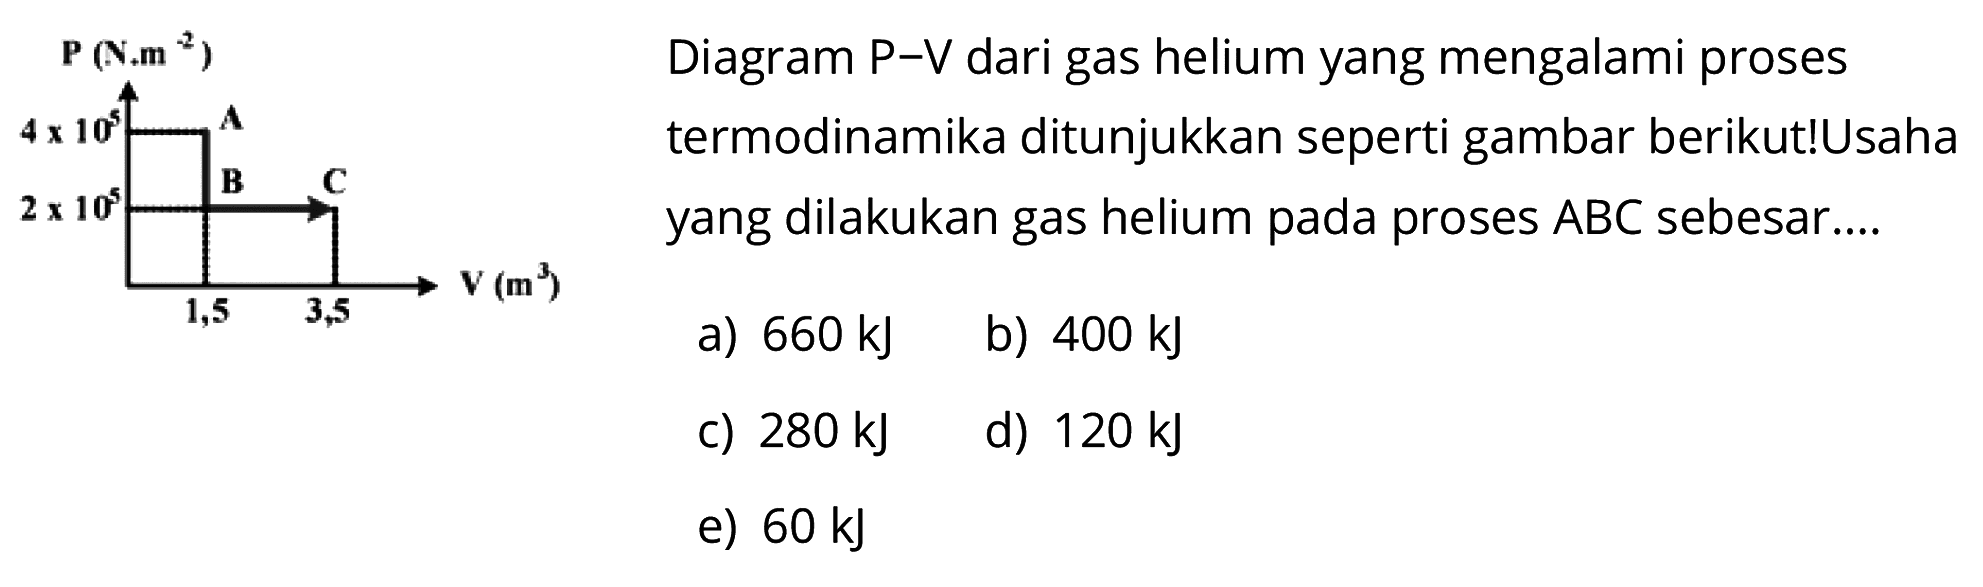 P(N.m^(-2)) 4x10^5 2x10^5 1,5 3,5 V(m^3) Diagram P-V dari gas helium yang mengalami proses termodinamika ditunjukkan seperti gambar berikut! Usaha yang dilakukan gas helium pada proses ABC sebesar.... 